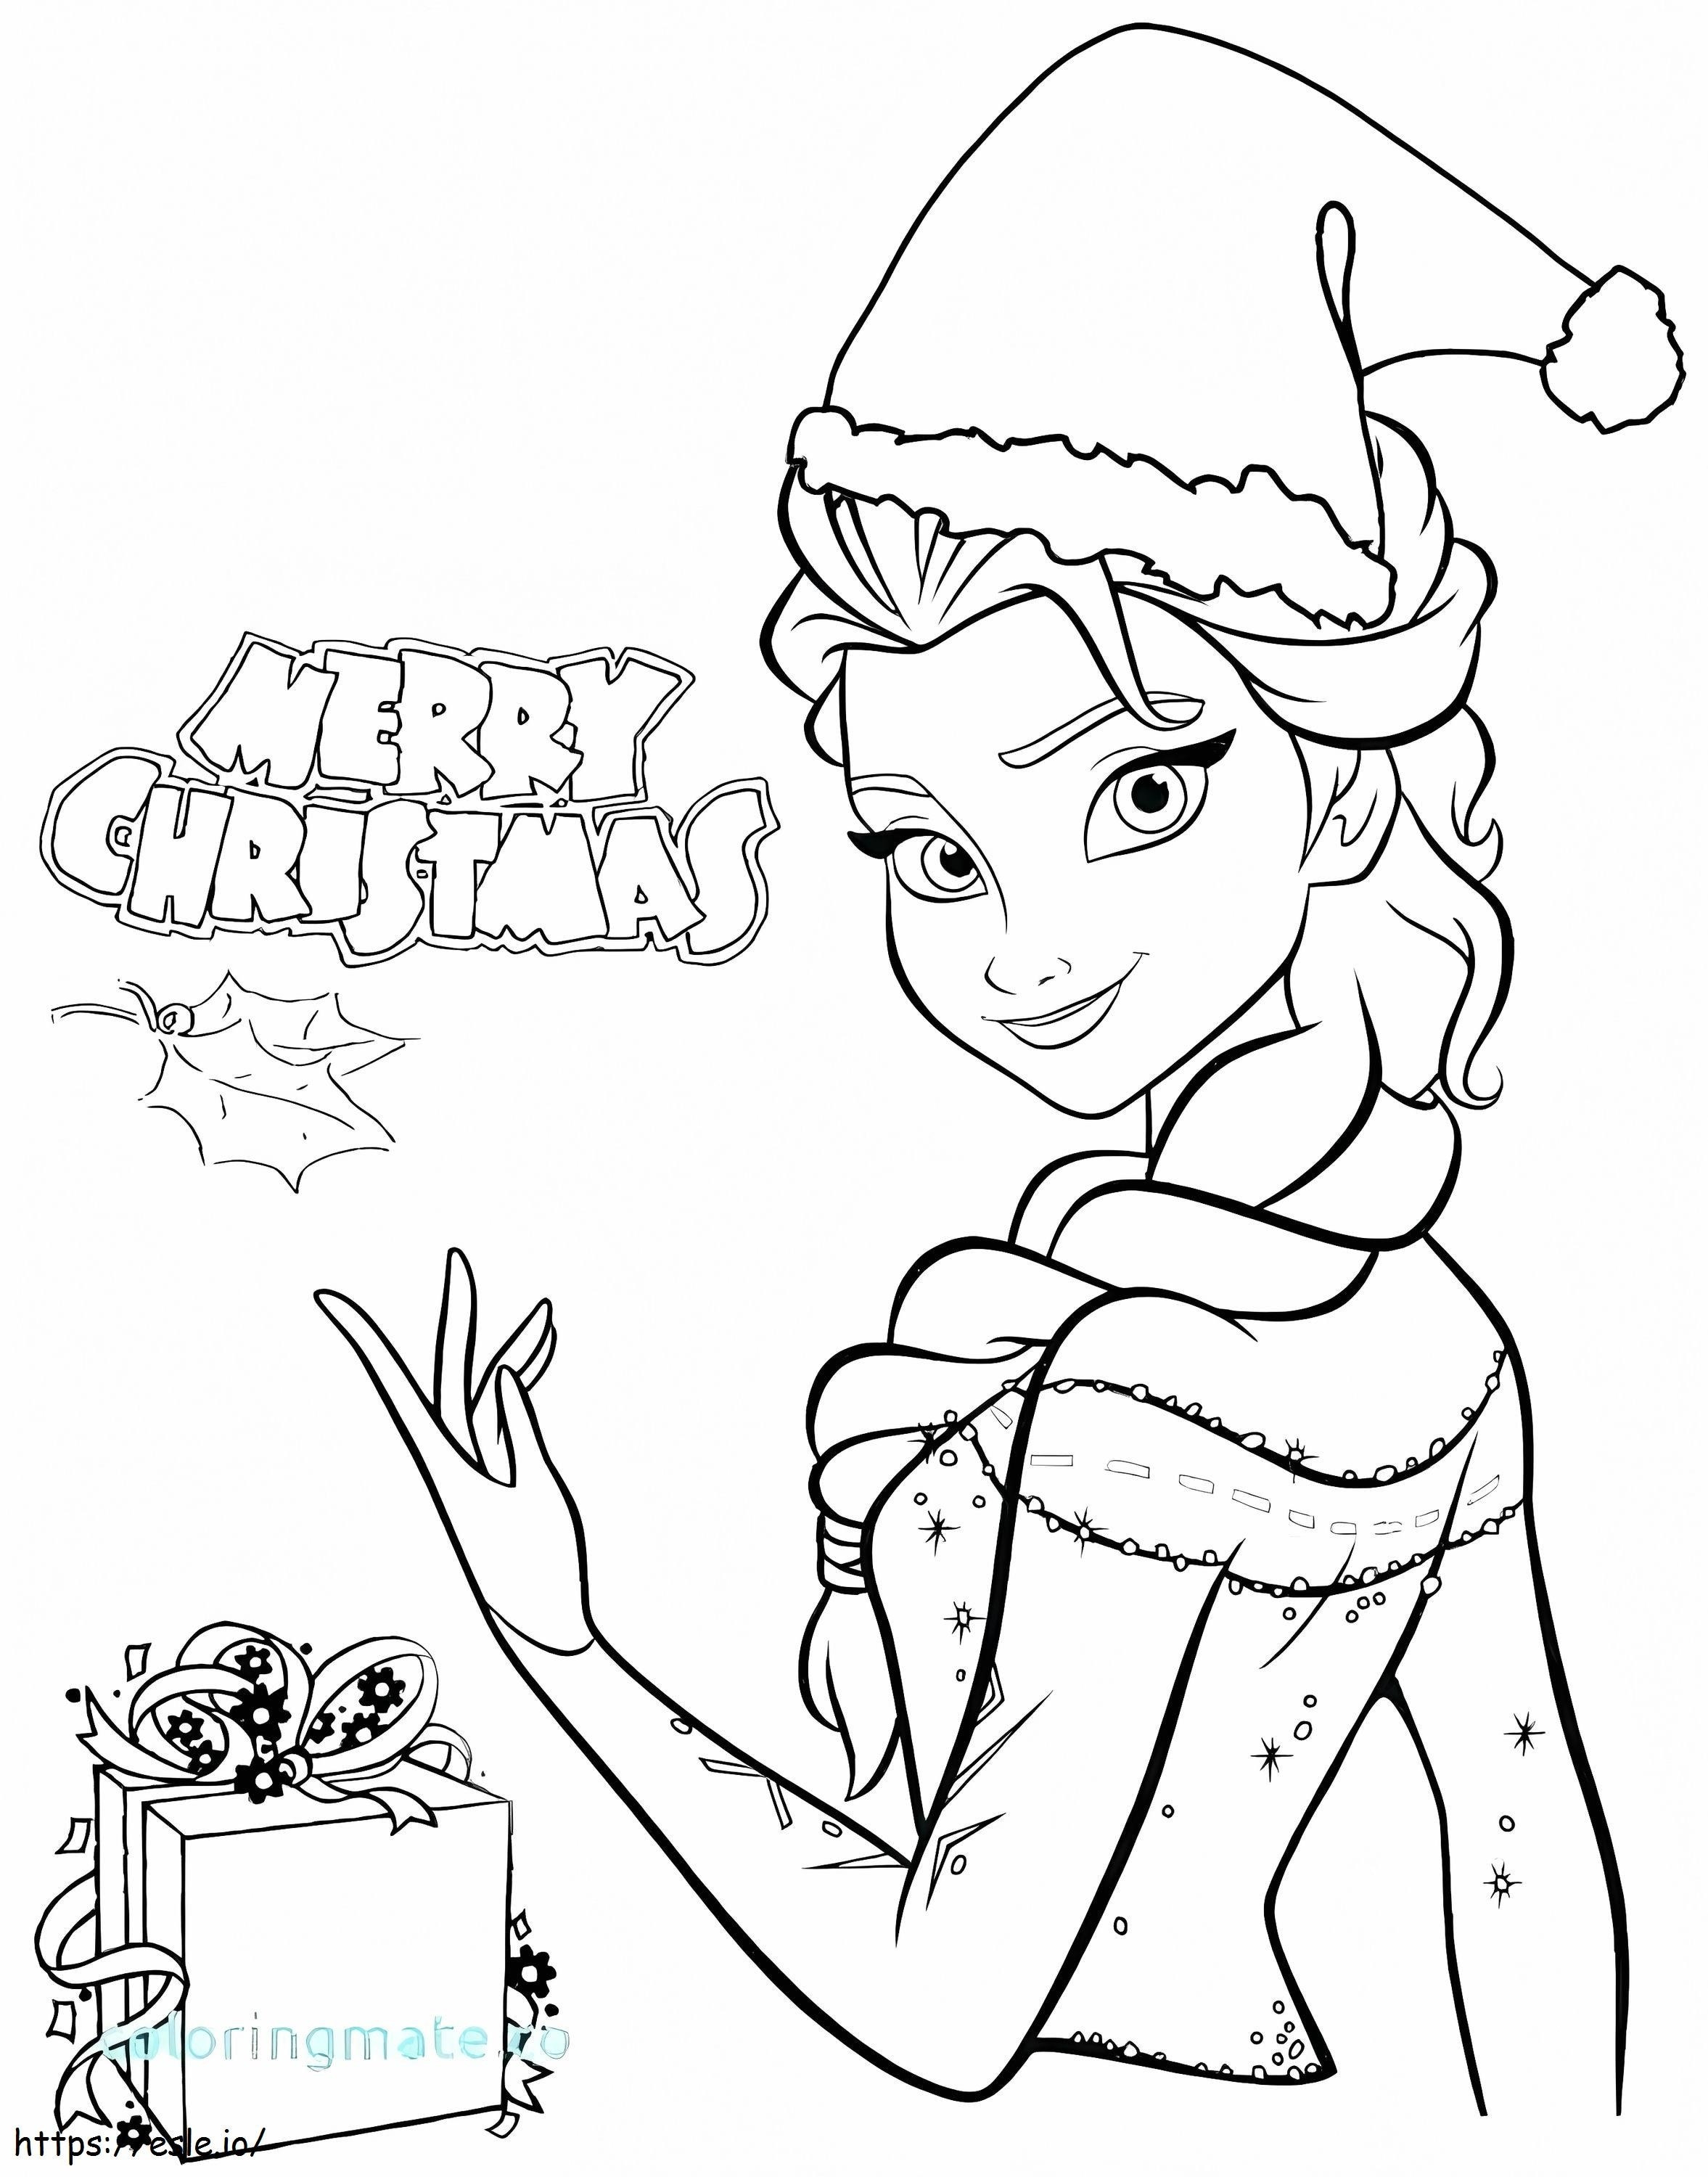 Frohe Weihnachten mit Elsa ausmalbilder